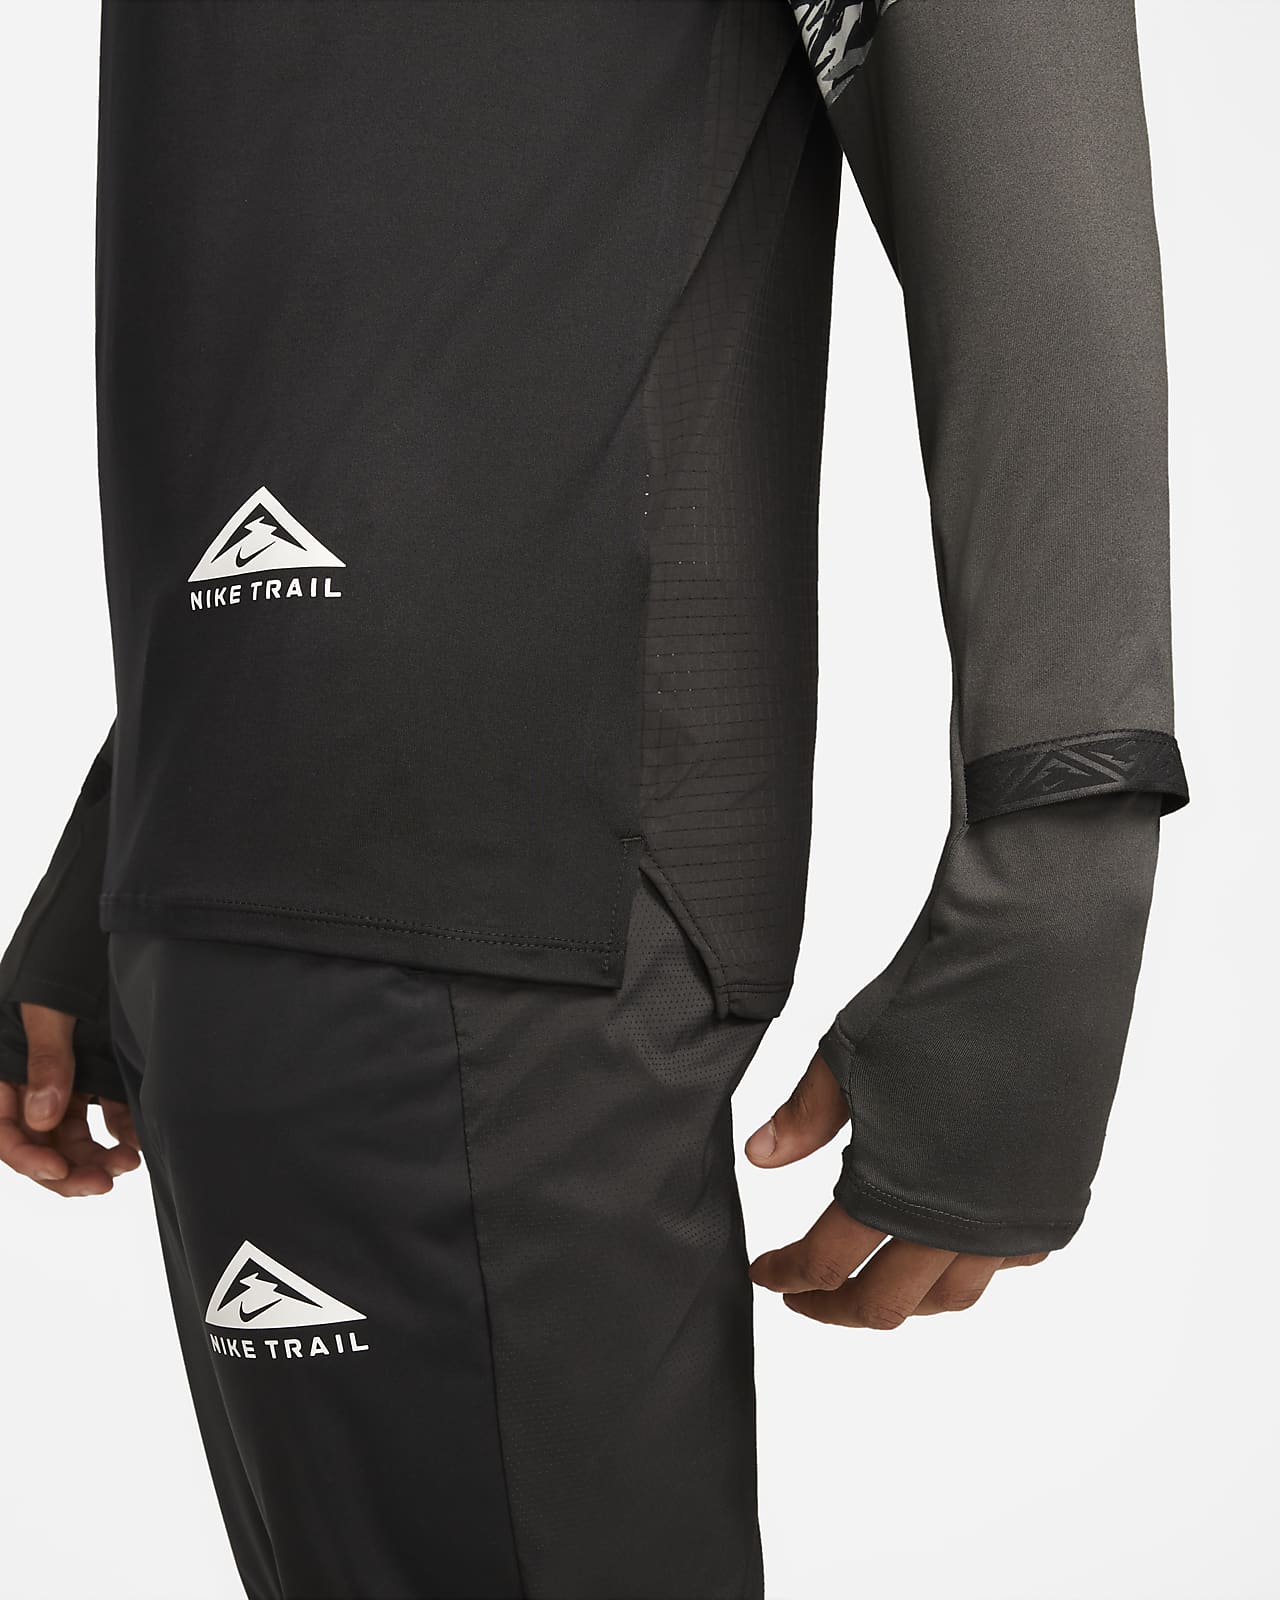 Racionalización diversión Cañón Nike Dri-FIT Camiseta de running con media cremallera - Hombre. Nike ES